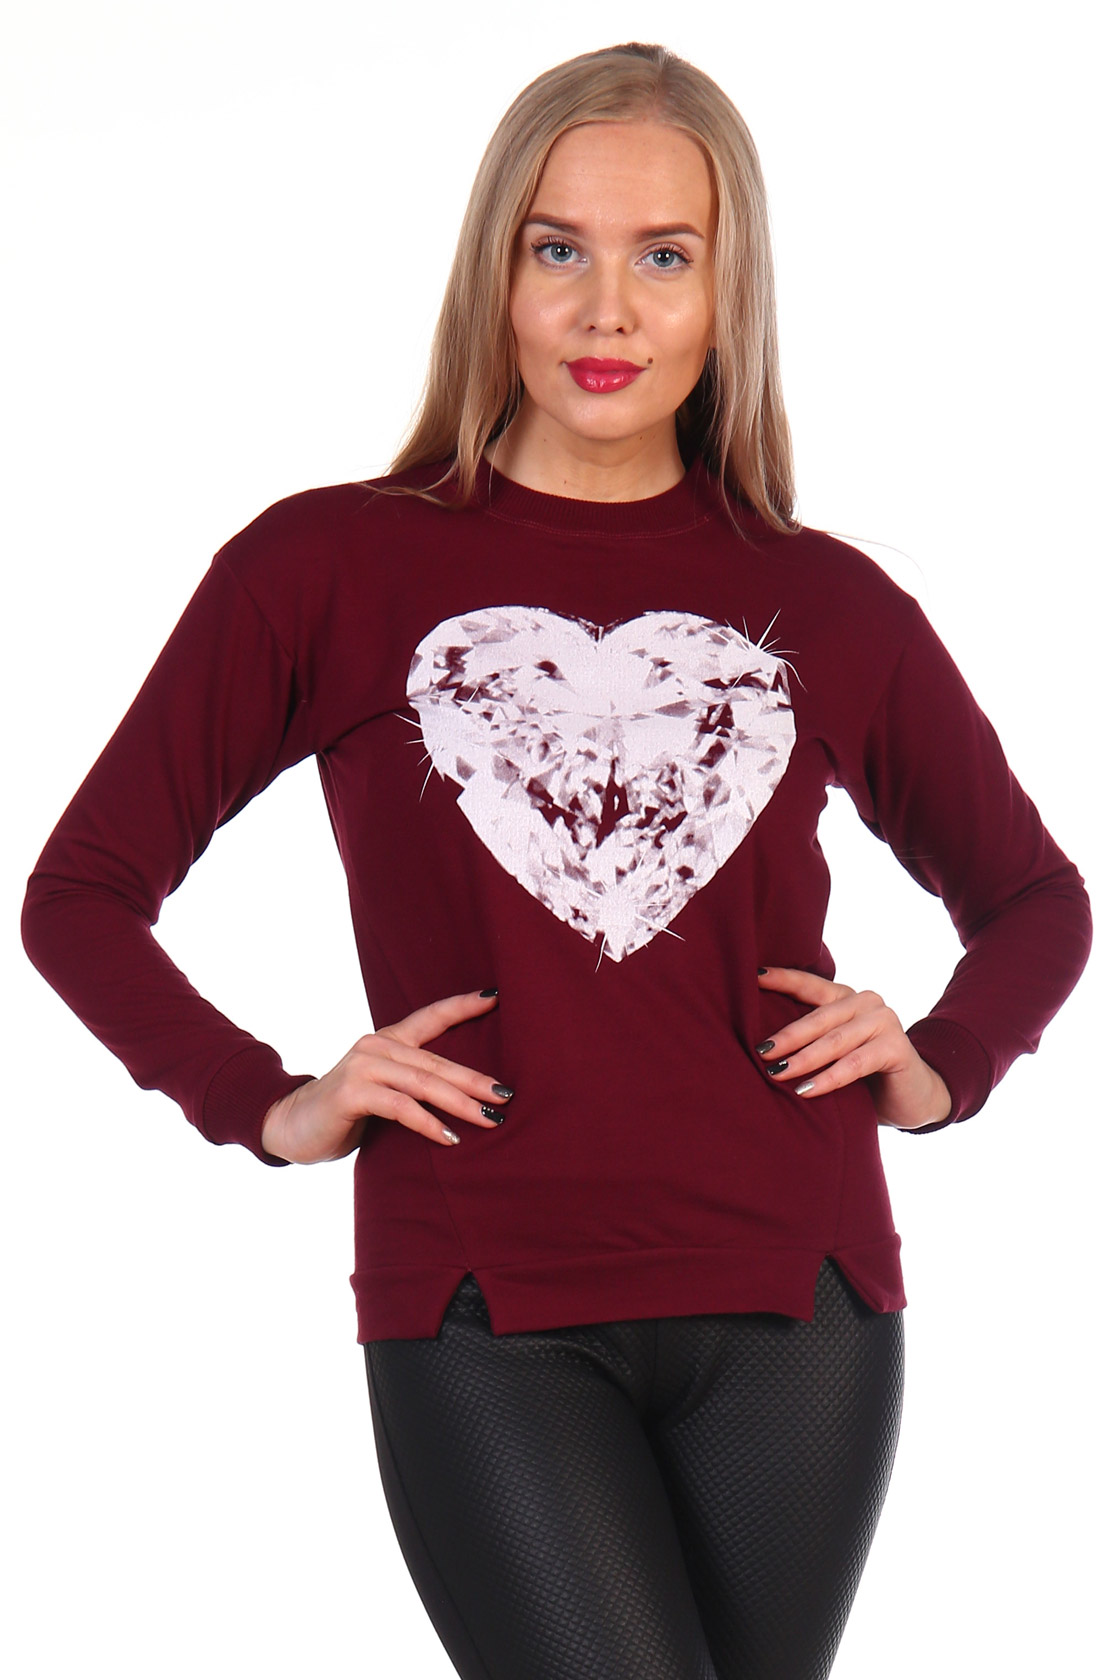 Фото товара 14948, бордовый свитшот с сердцем